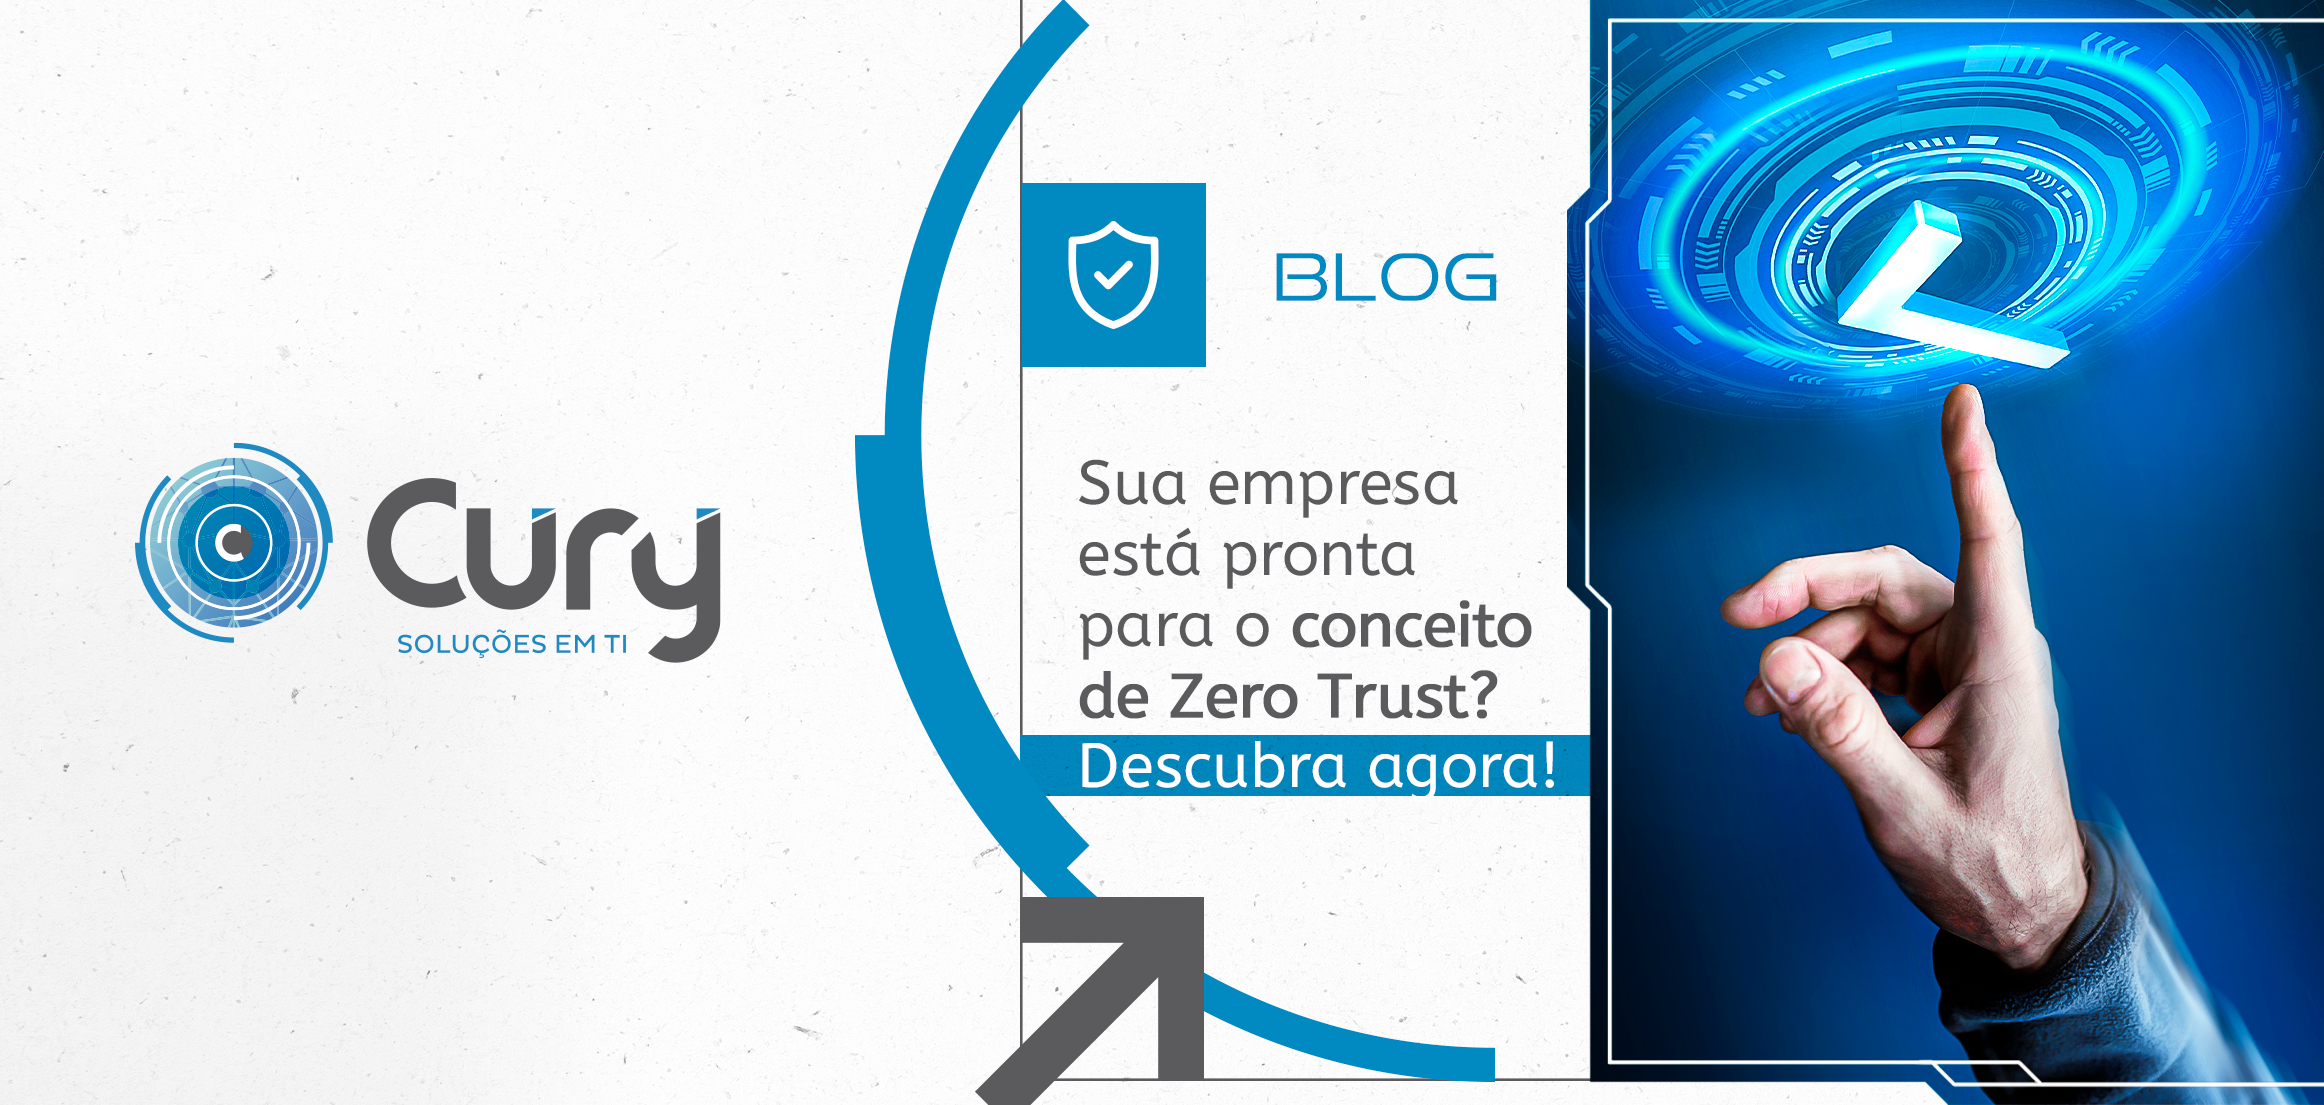 Sua empresa está pronta para o conceito de Zero Trust? Descubra agora!